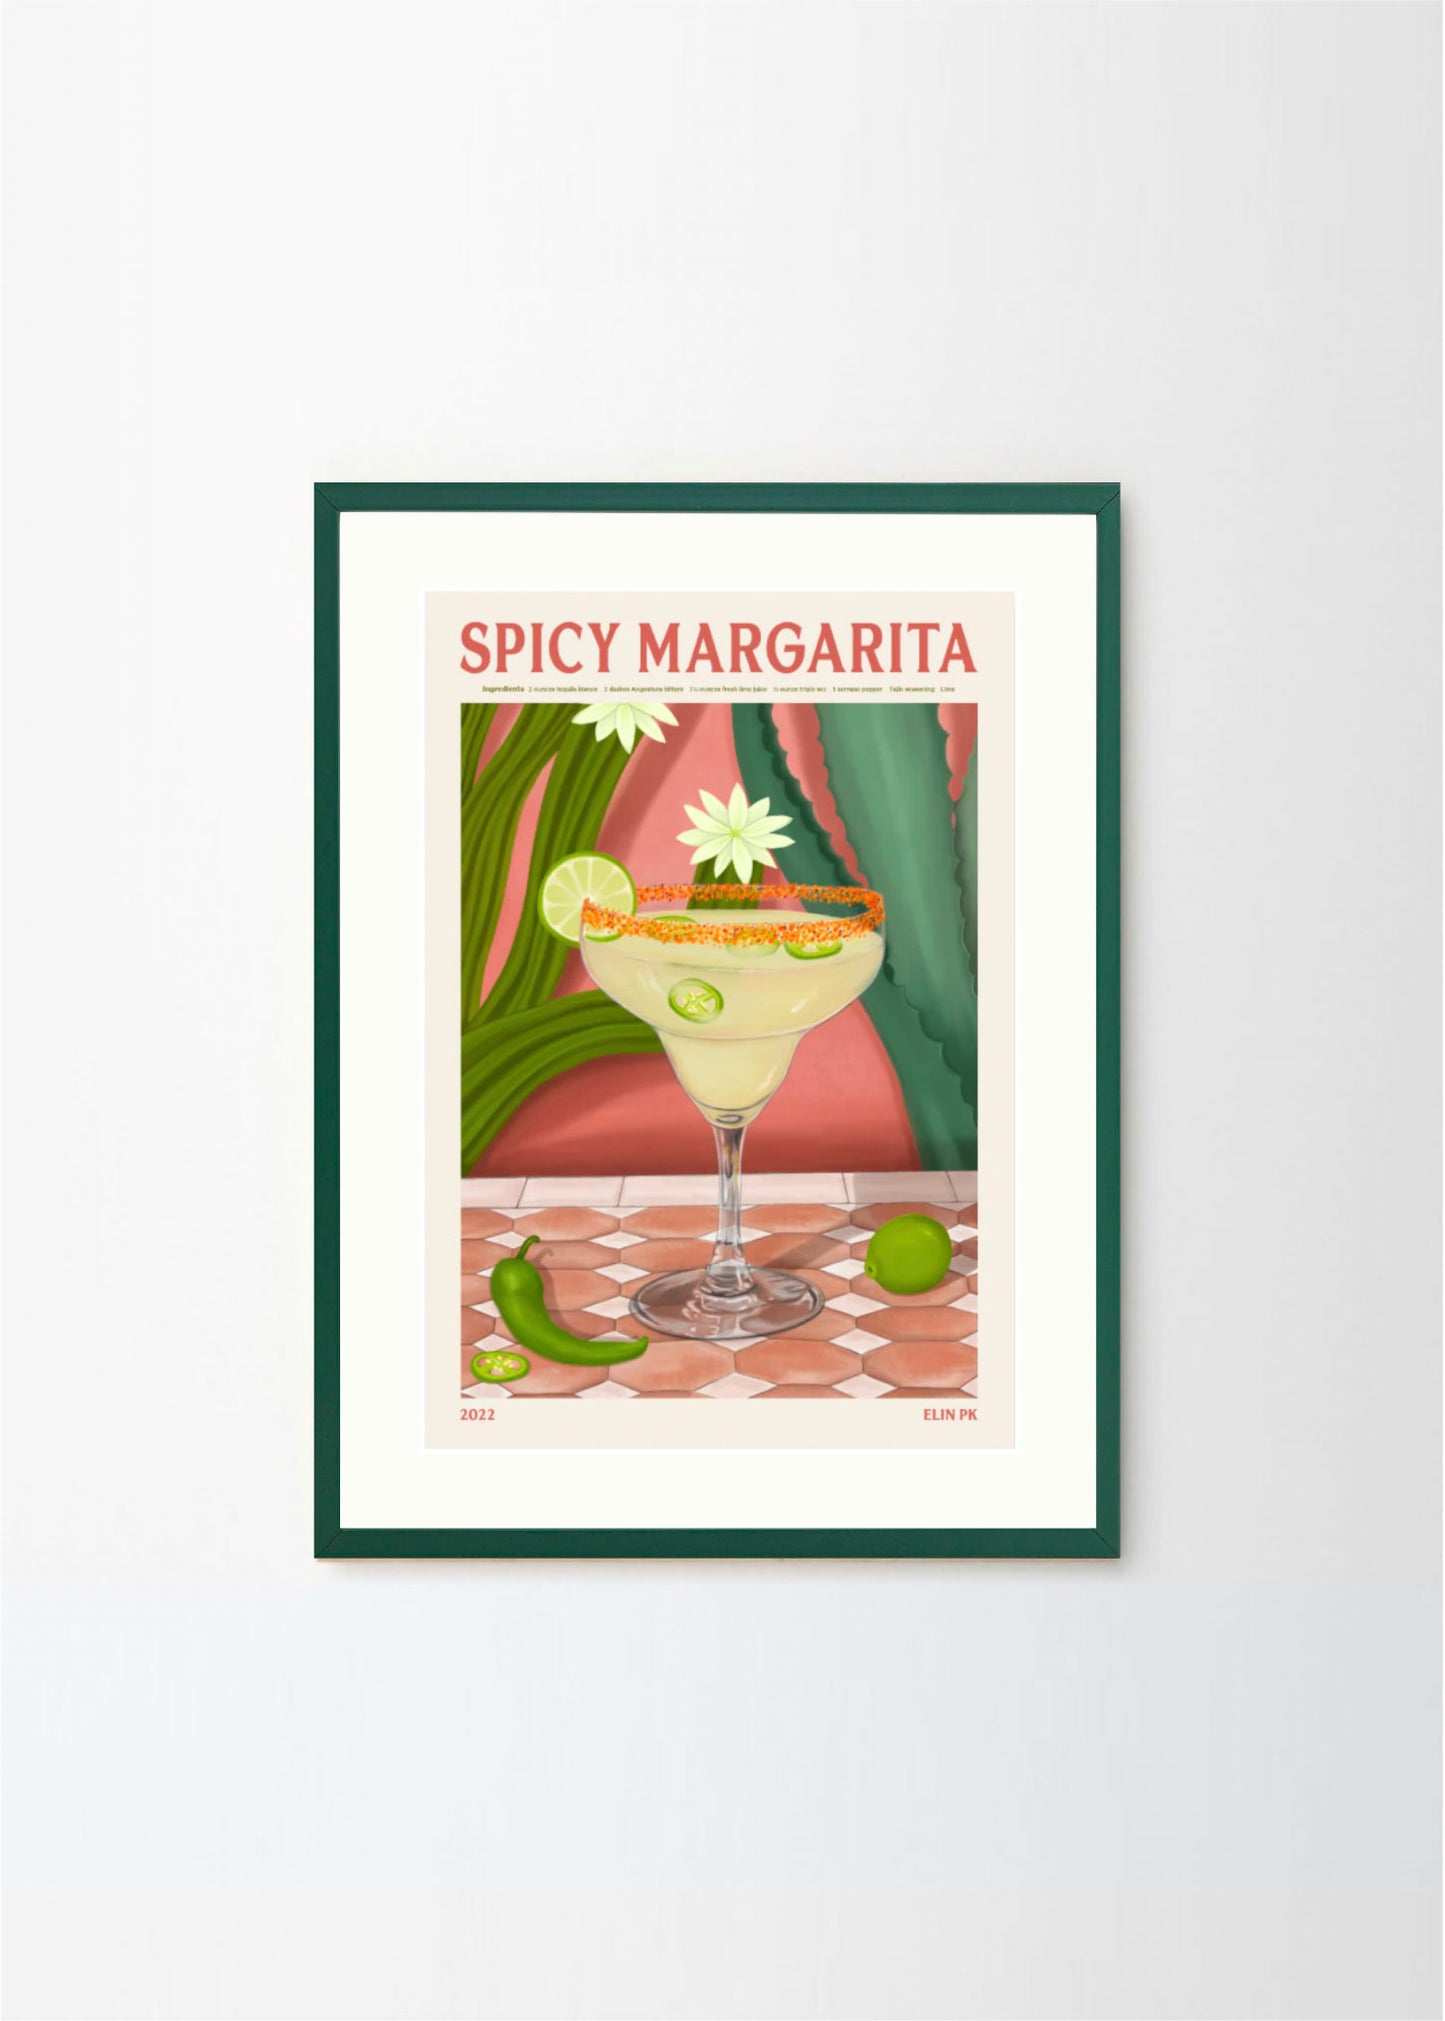 Spicy Margarita